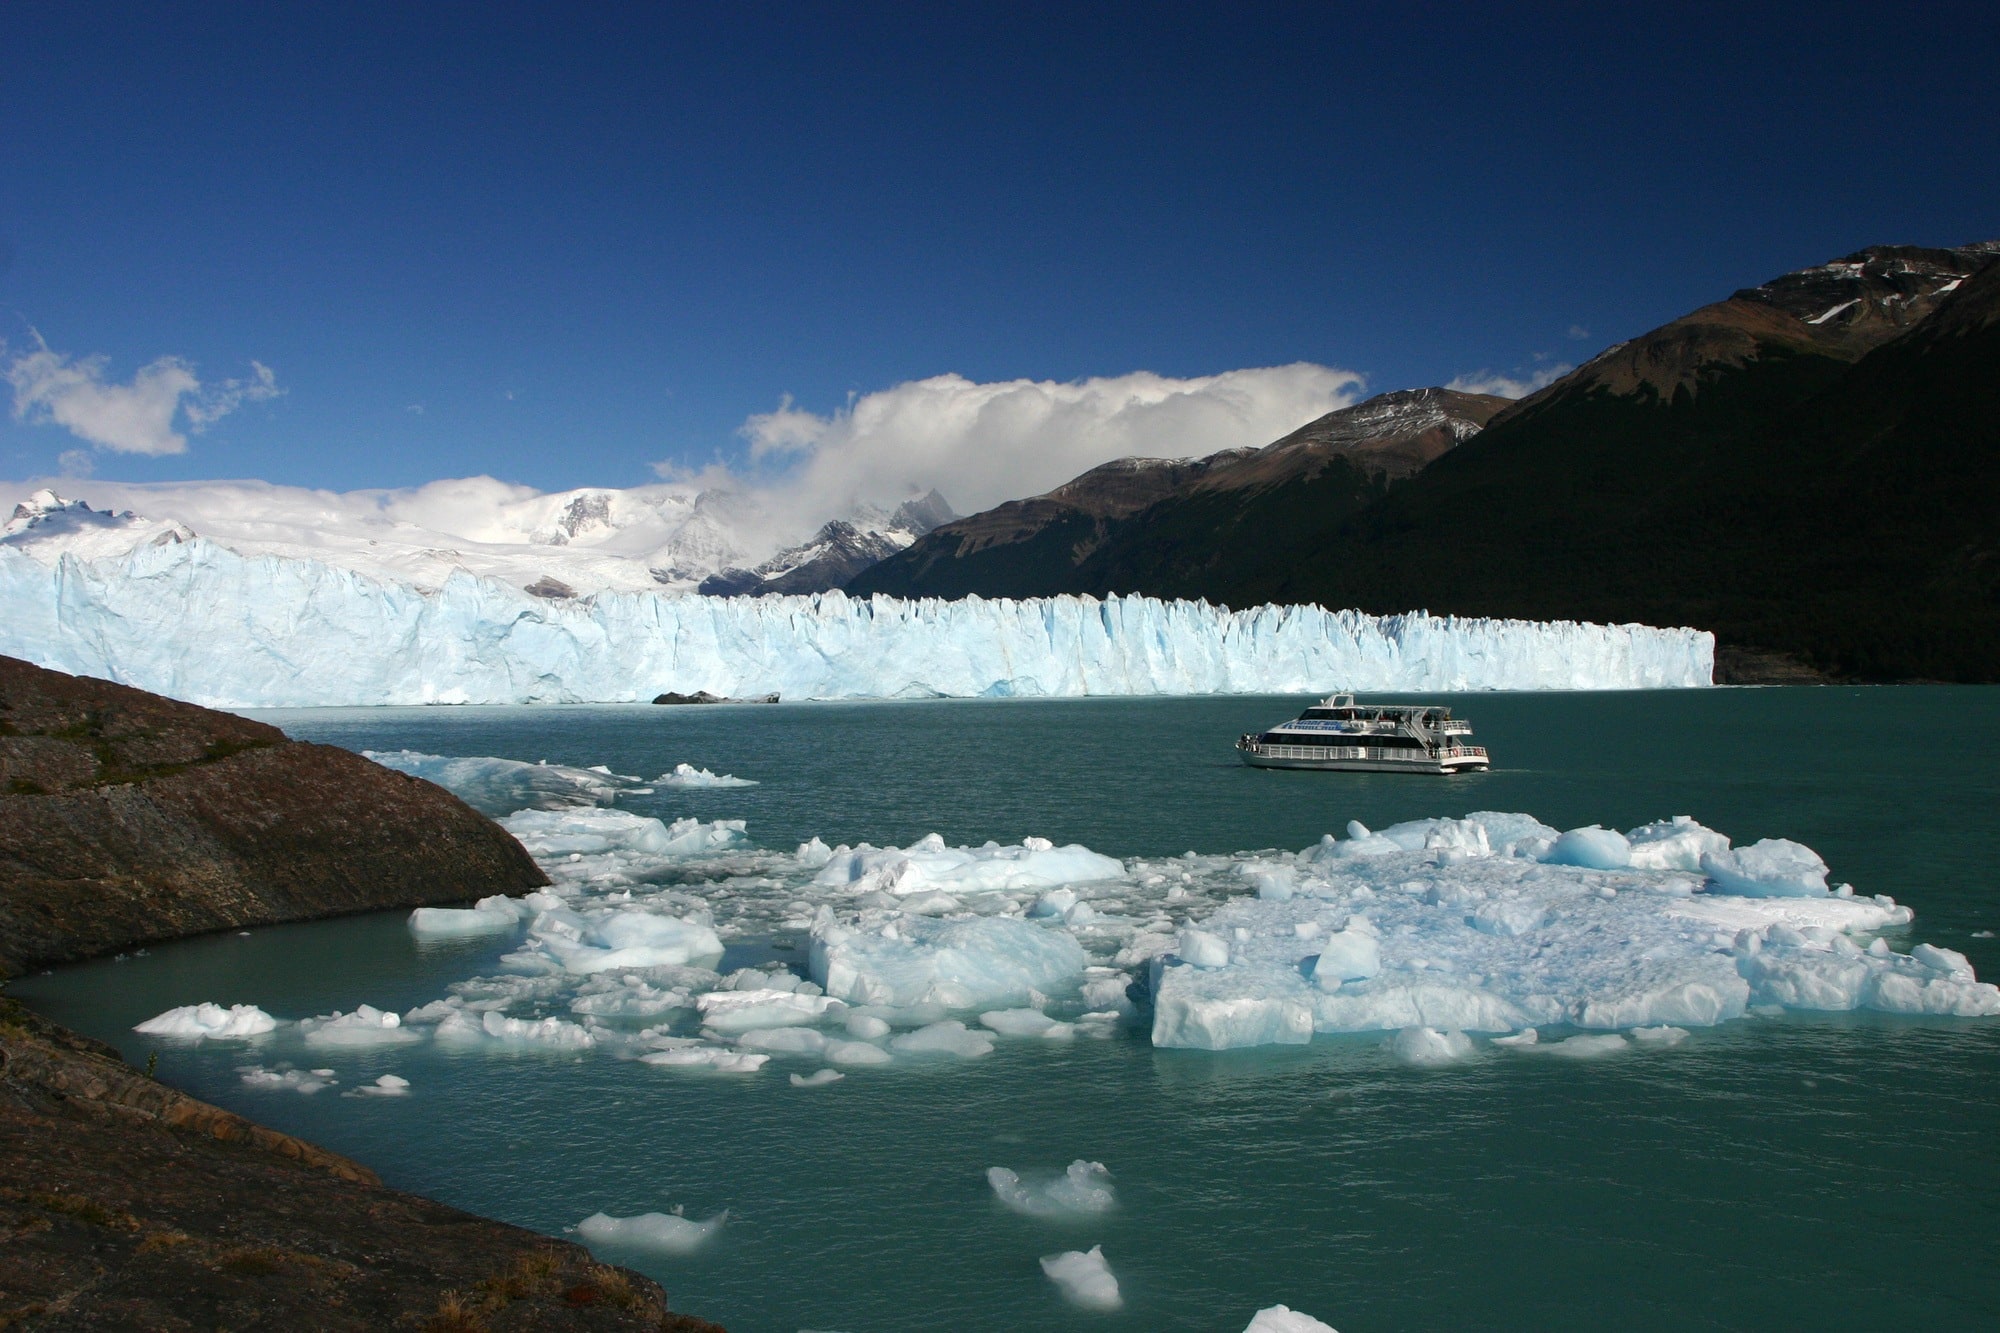 Boat tour of the Perito Moreno Glacier in El Calafate, Argentina (Patagonia)